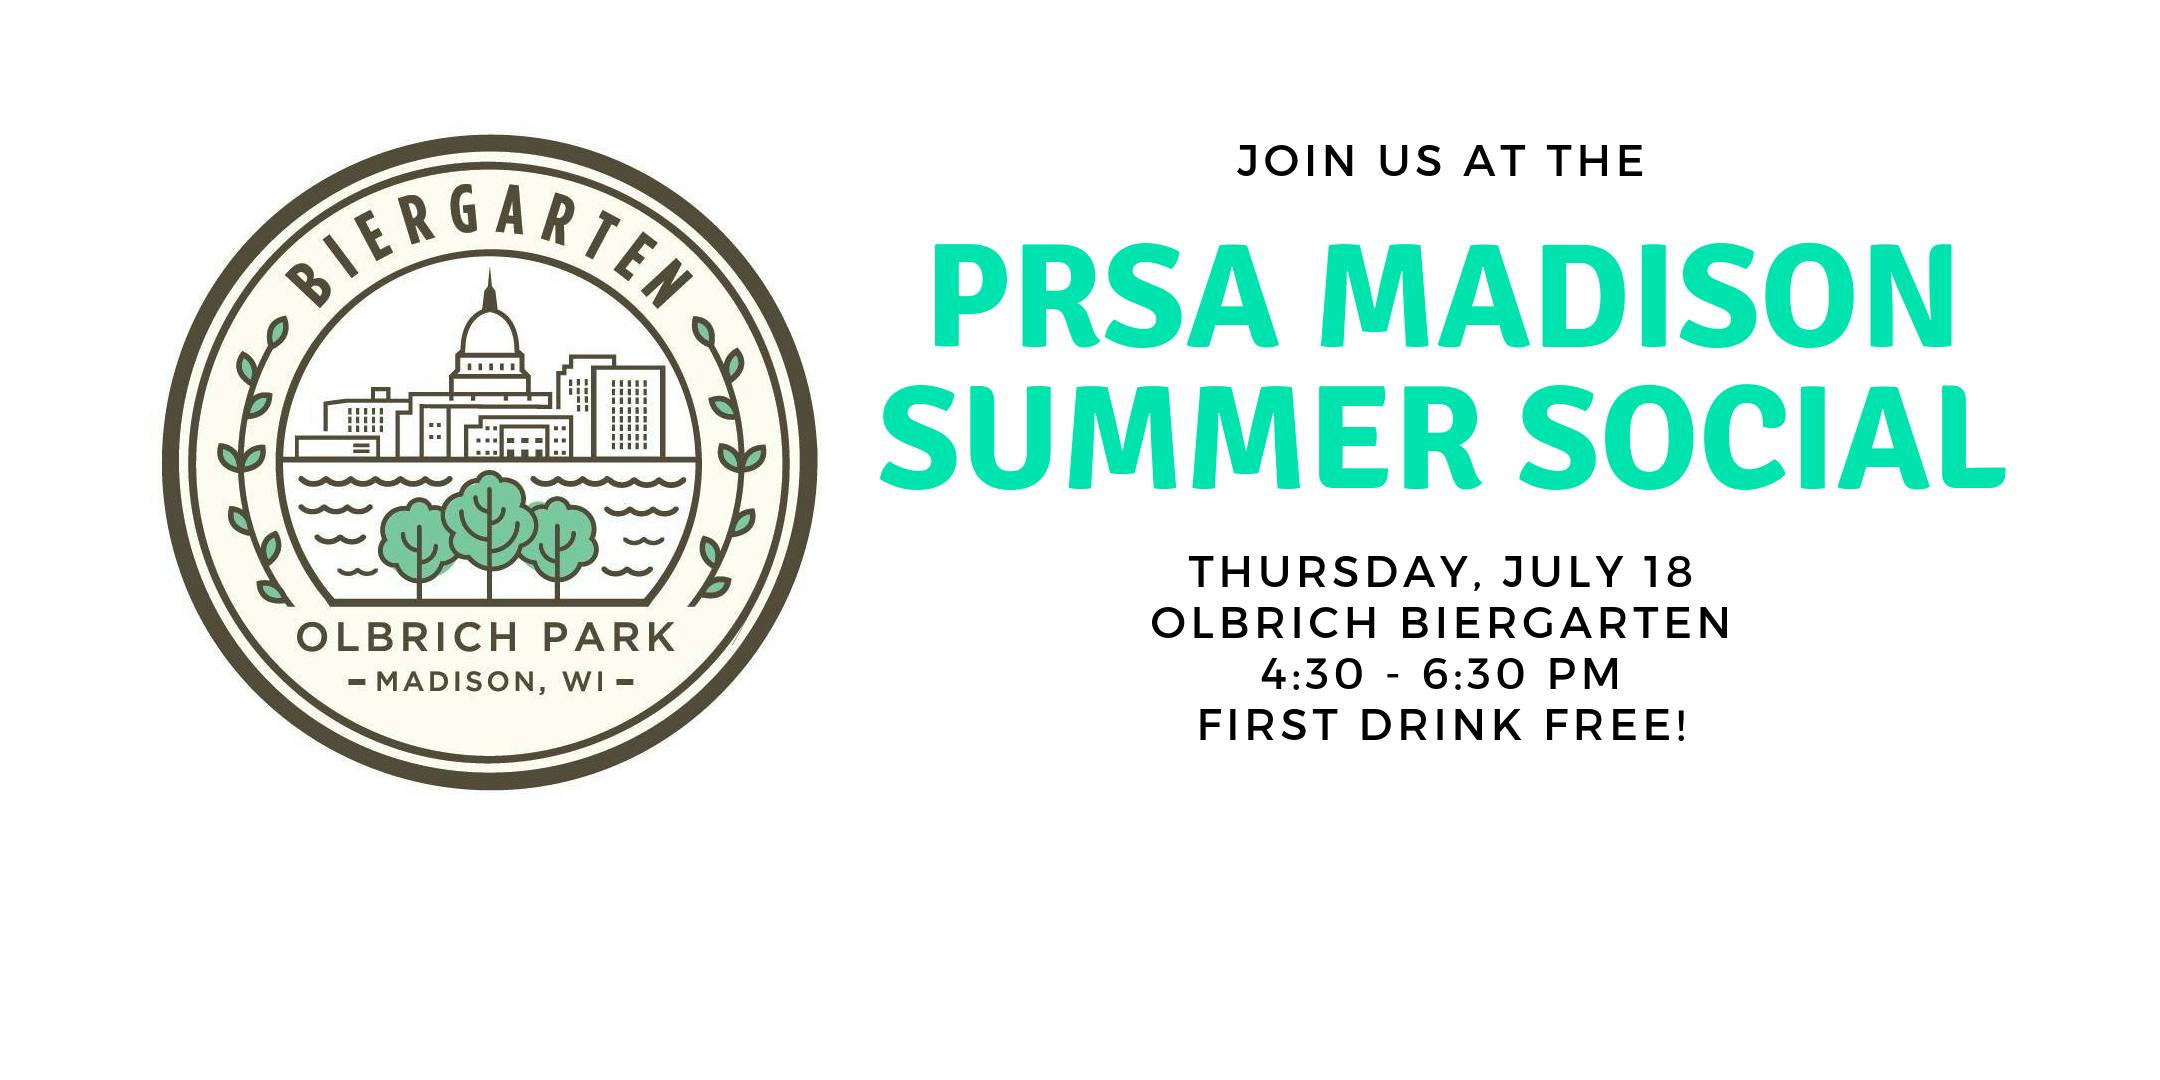 PRSA Madison Summer Social